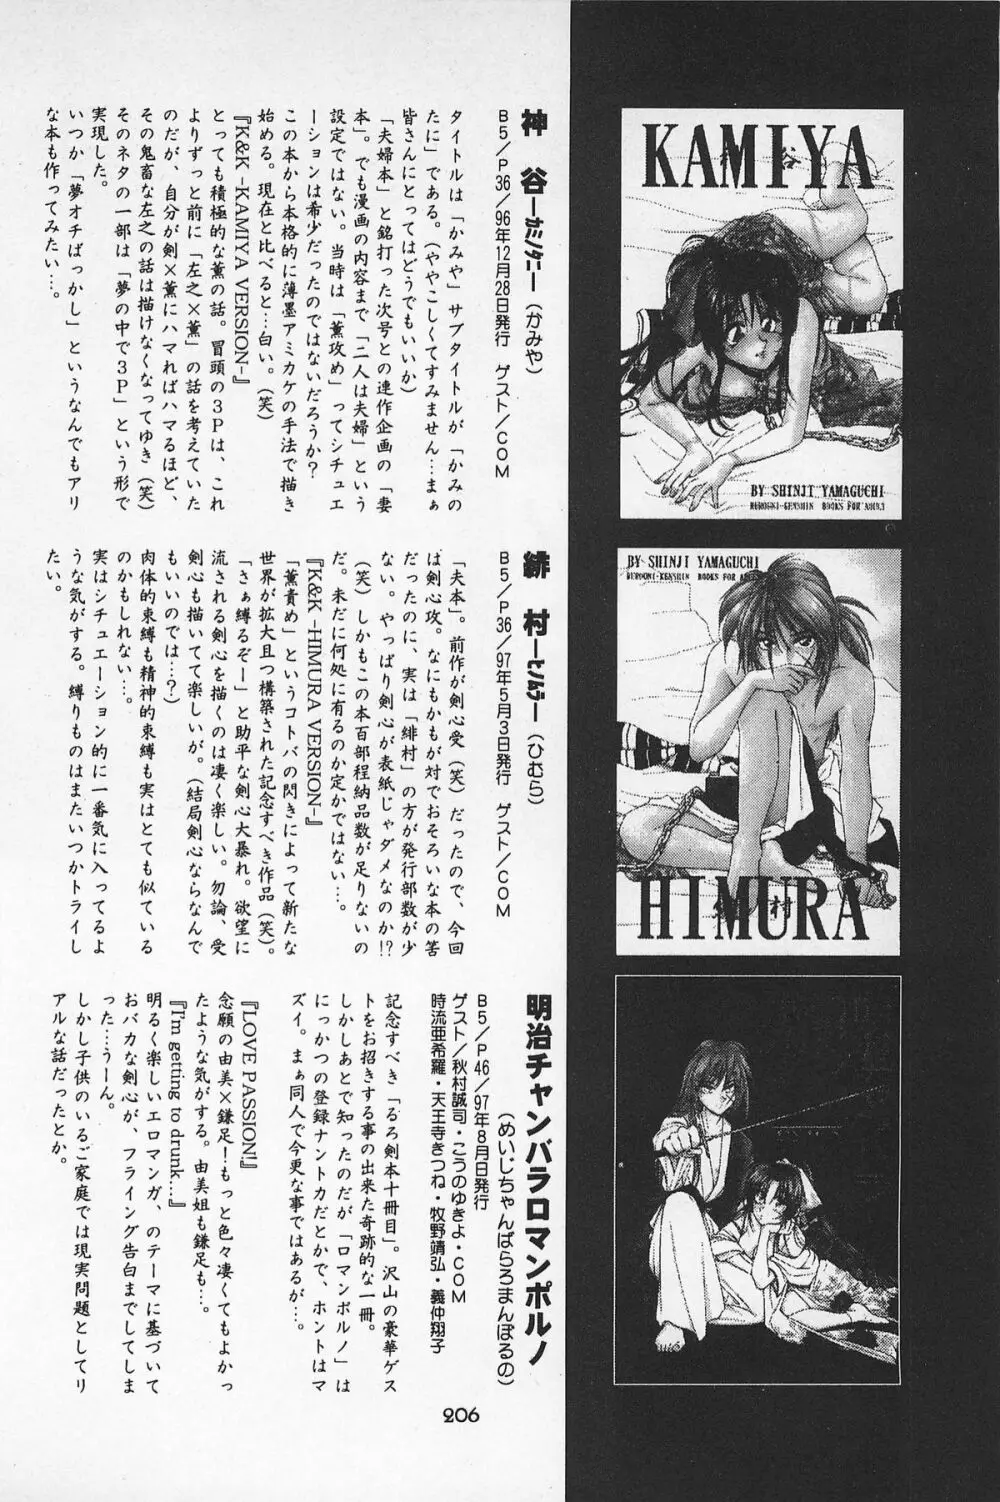 禁忌Ⅱ THE WORKS OF SHINJI YAMAGUCHI - page206